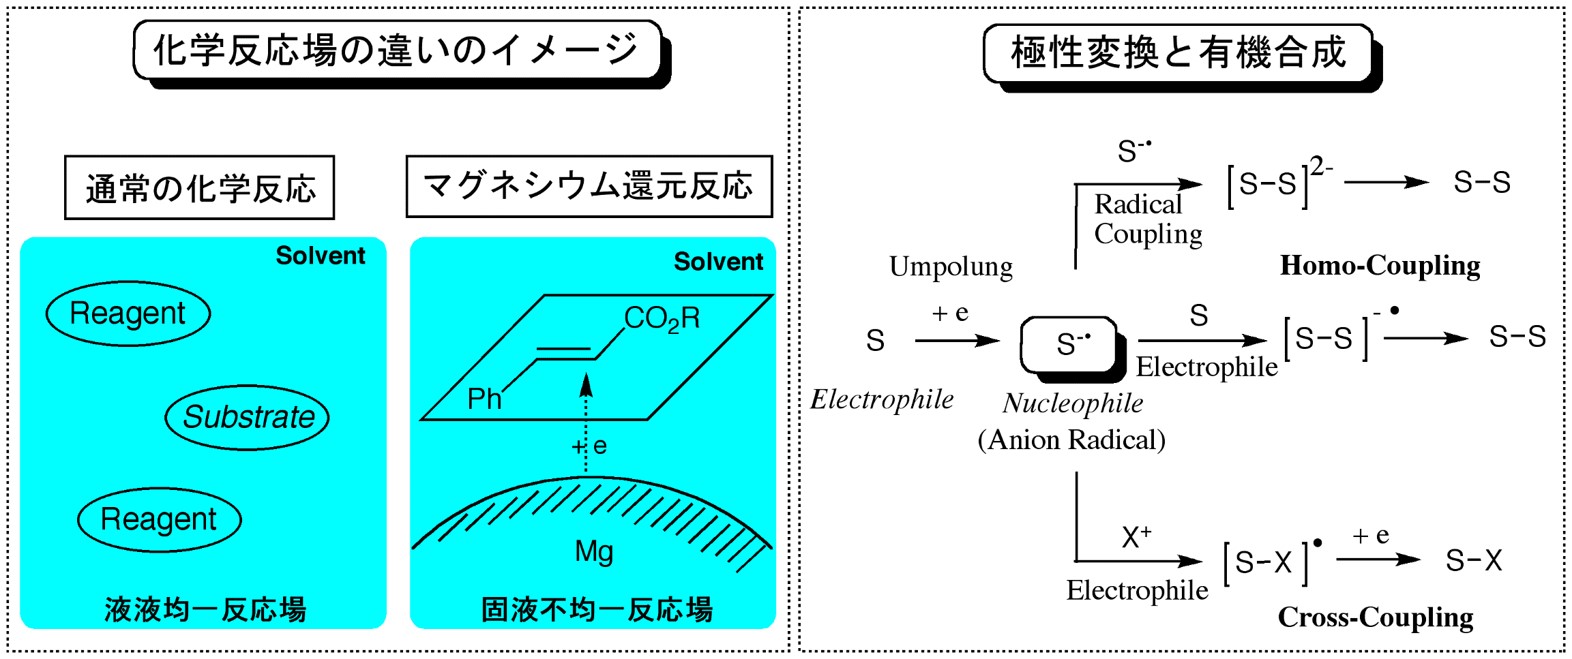 図２ 一般の化学反応と異なる反応場と極性変換効果に関するイメージ図